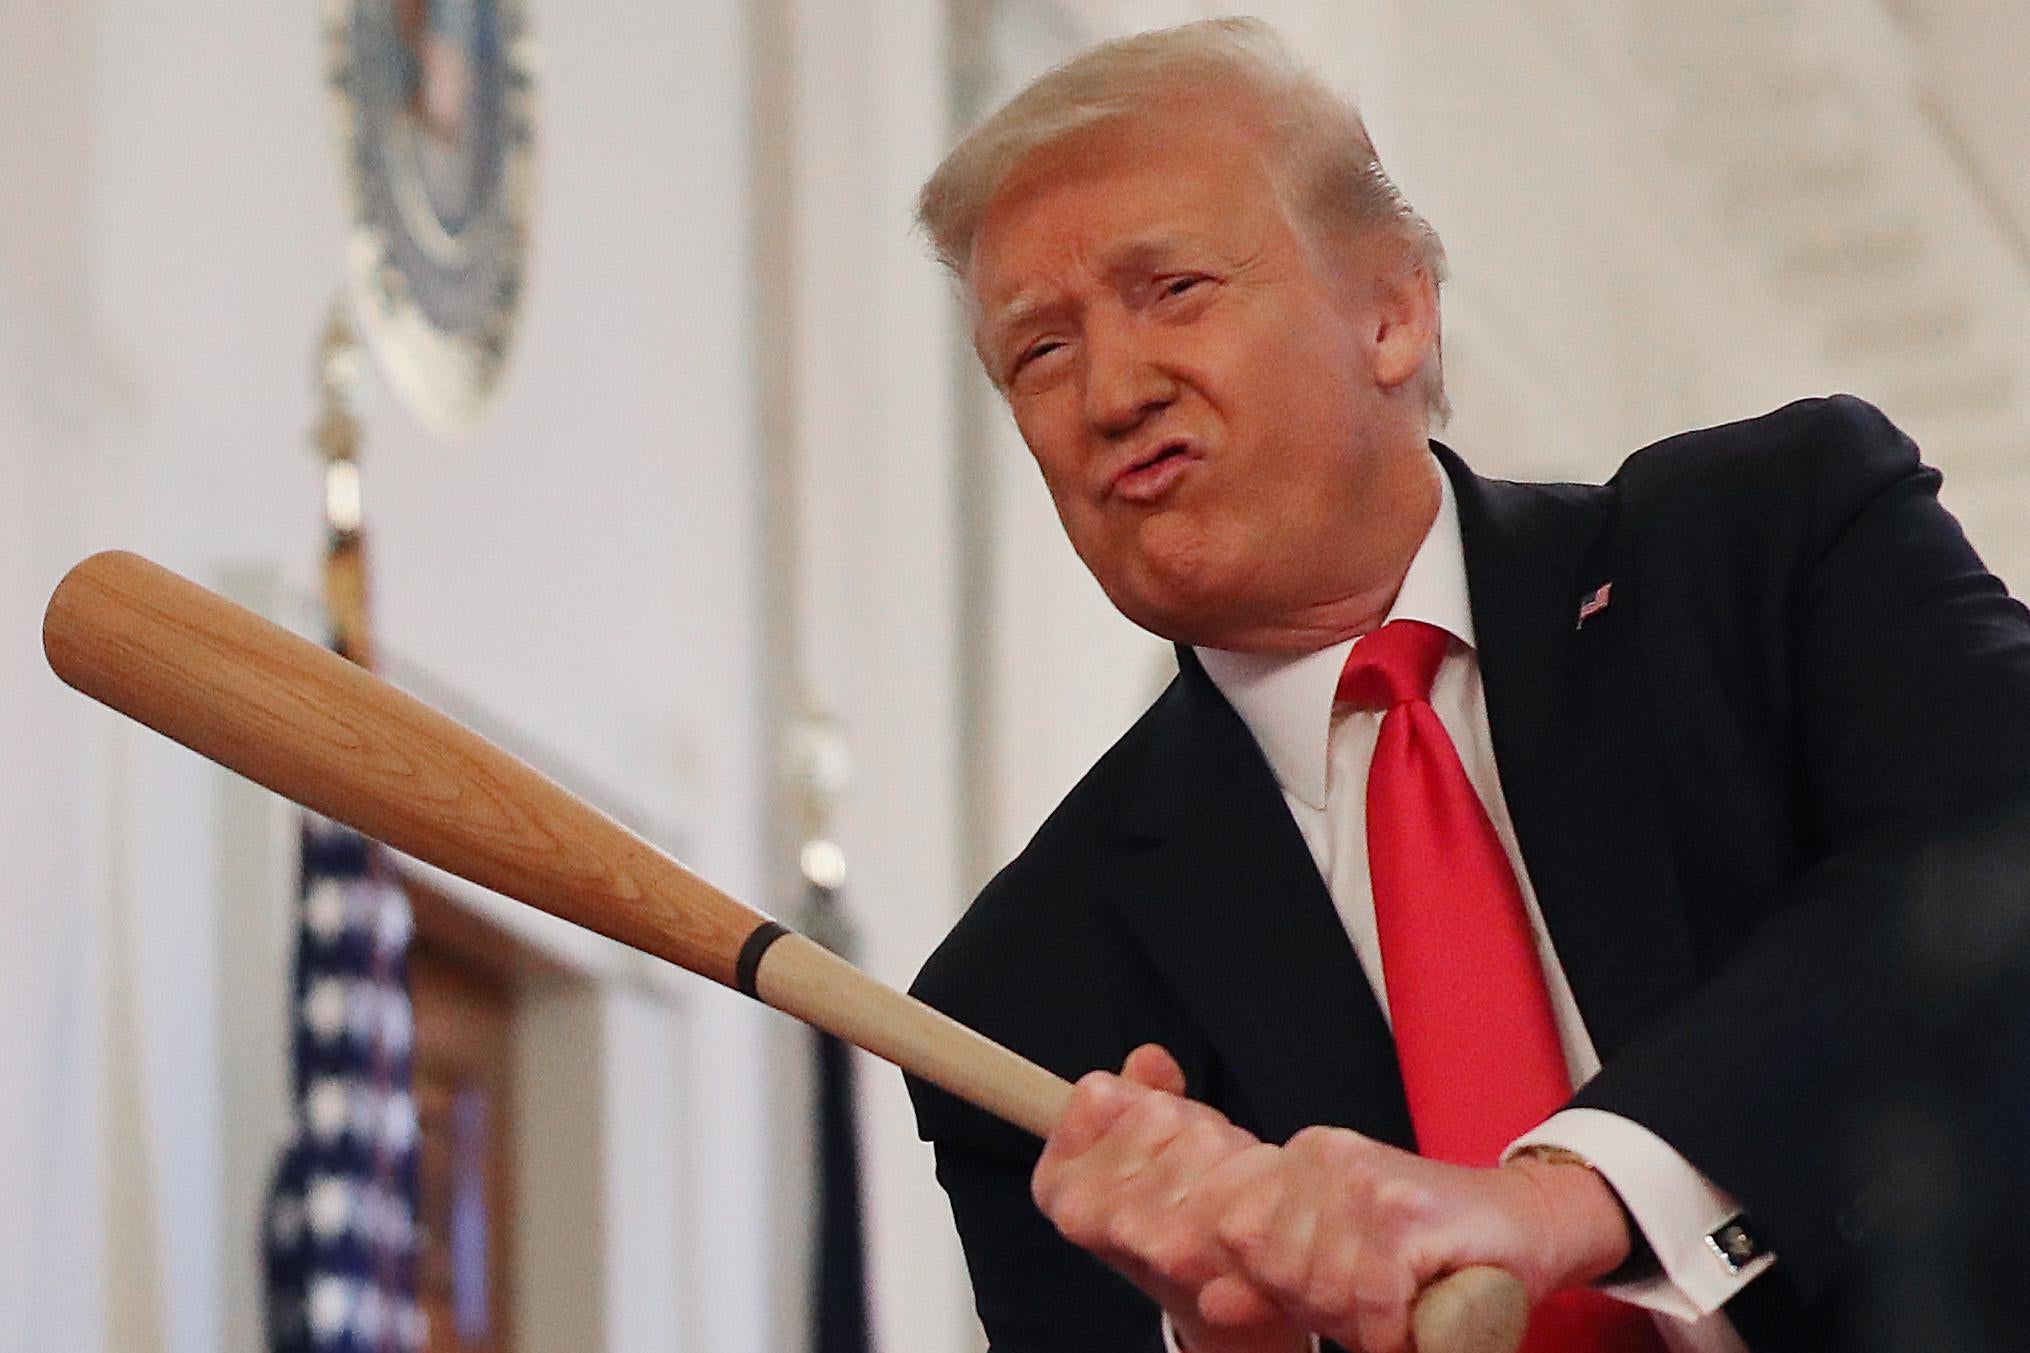 Donald Trump grimaces as he swings a baseball bat.